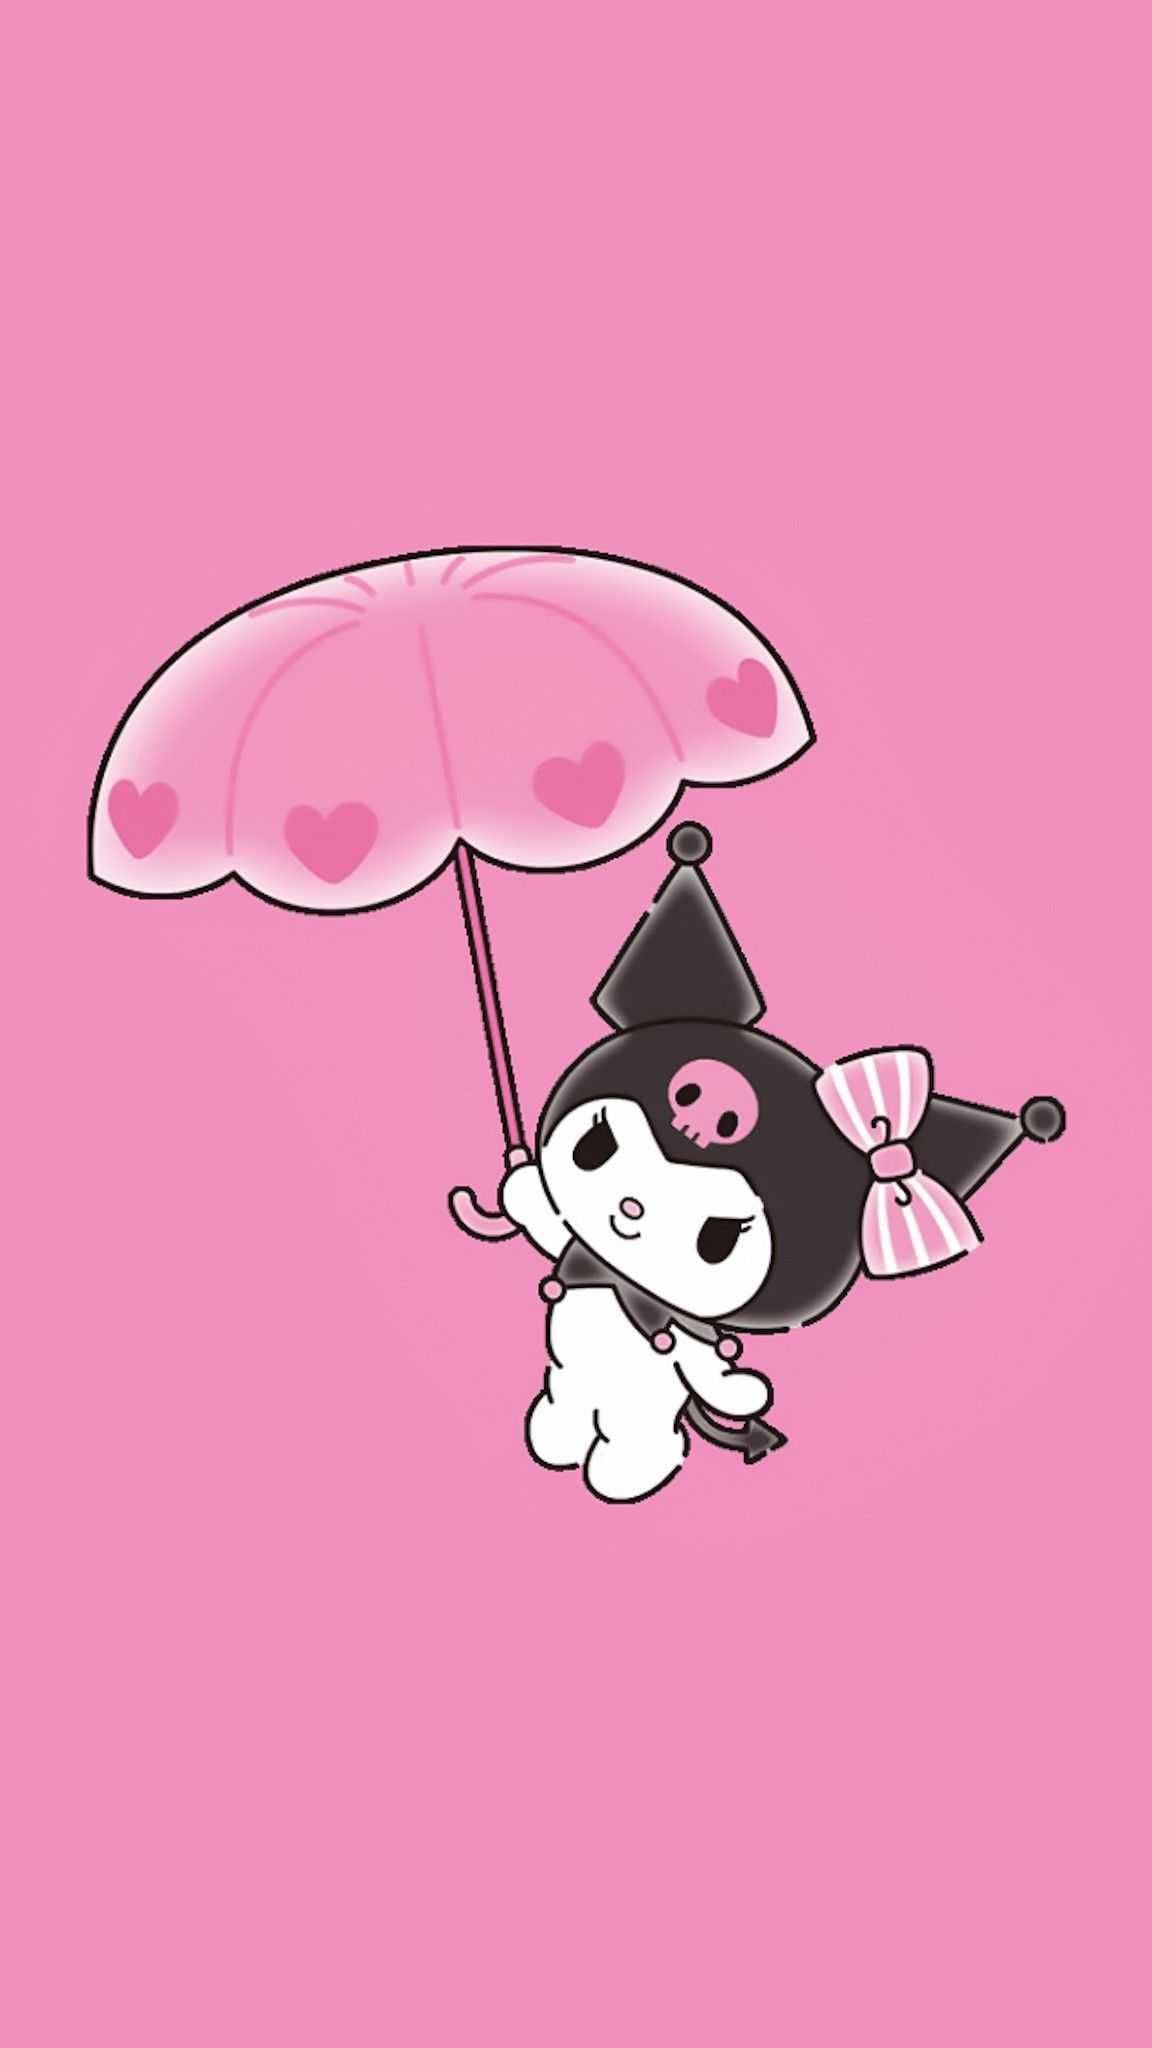 Kuromi with a pink umbrella - Kuromi